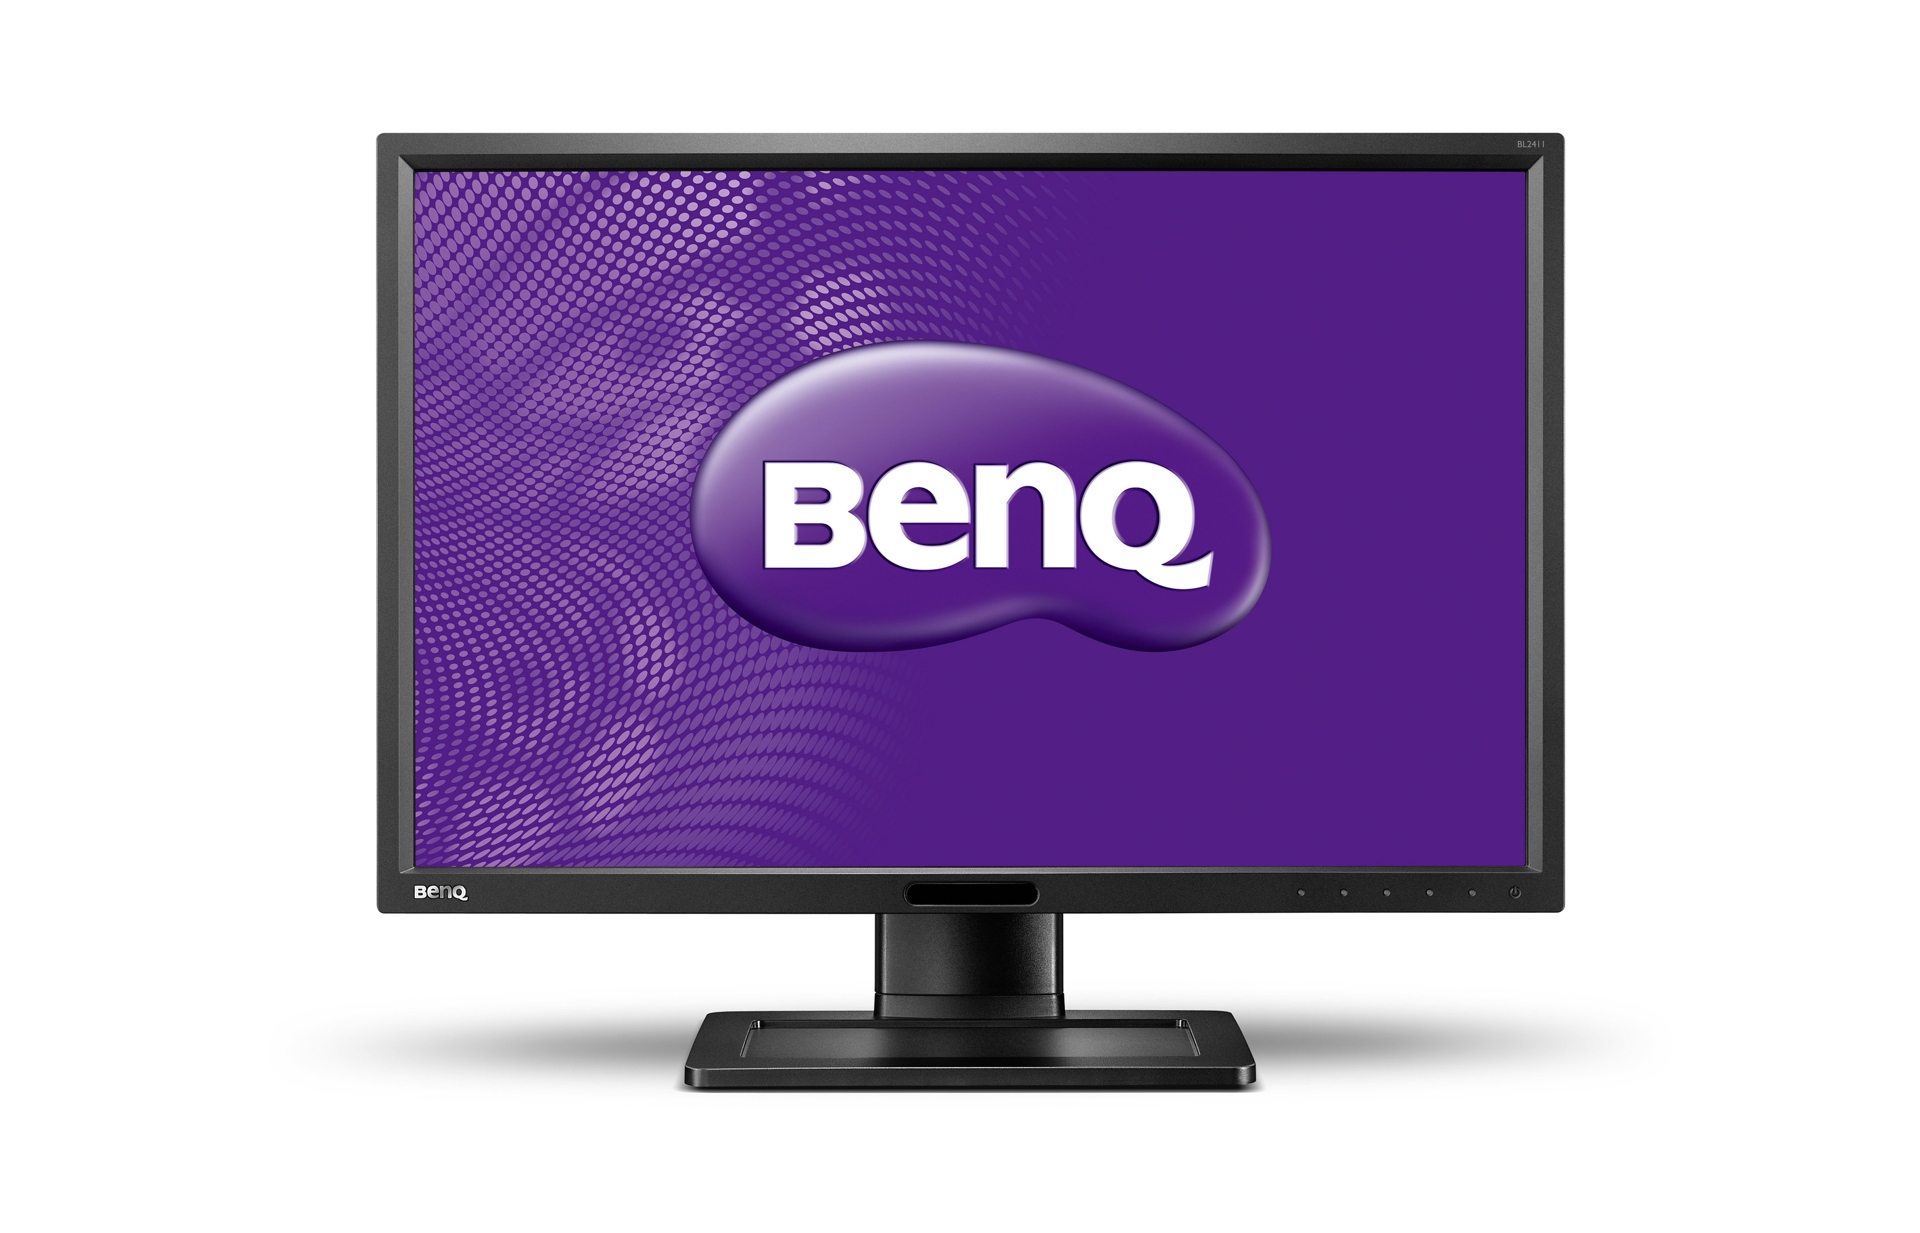 Immagine pubblicata in relazione al seguente contenuto: BenQ introduce il monitor BL2411PT con pannello IPS e Senseye | Nome immagine: news19609_BenQ-BL2411PT-24-Inch-LCD-Monitor_1.jpg